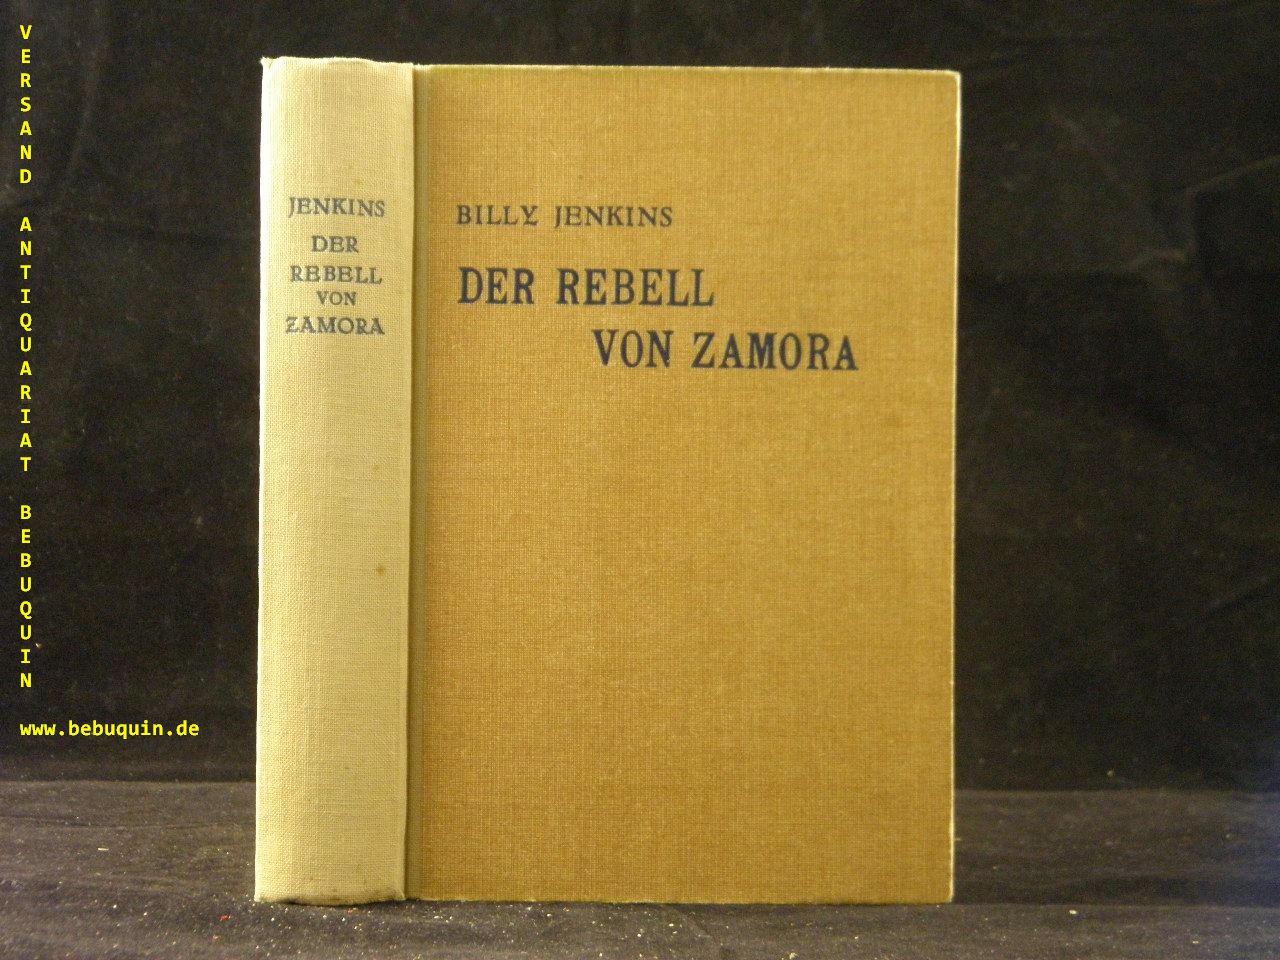 BILLY JENKINS.-  006 / KEMPP, Hannes: - Der Rebell von Zamora.  Nach den Berichten und Aufzeichnungen Billy Jenkins.